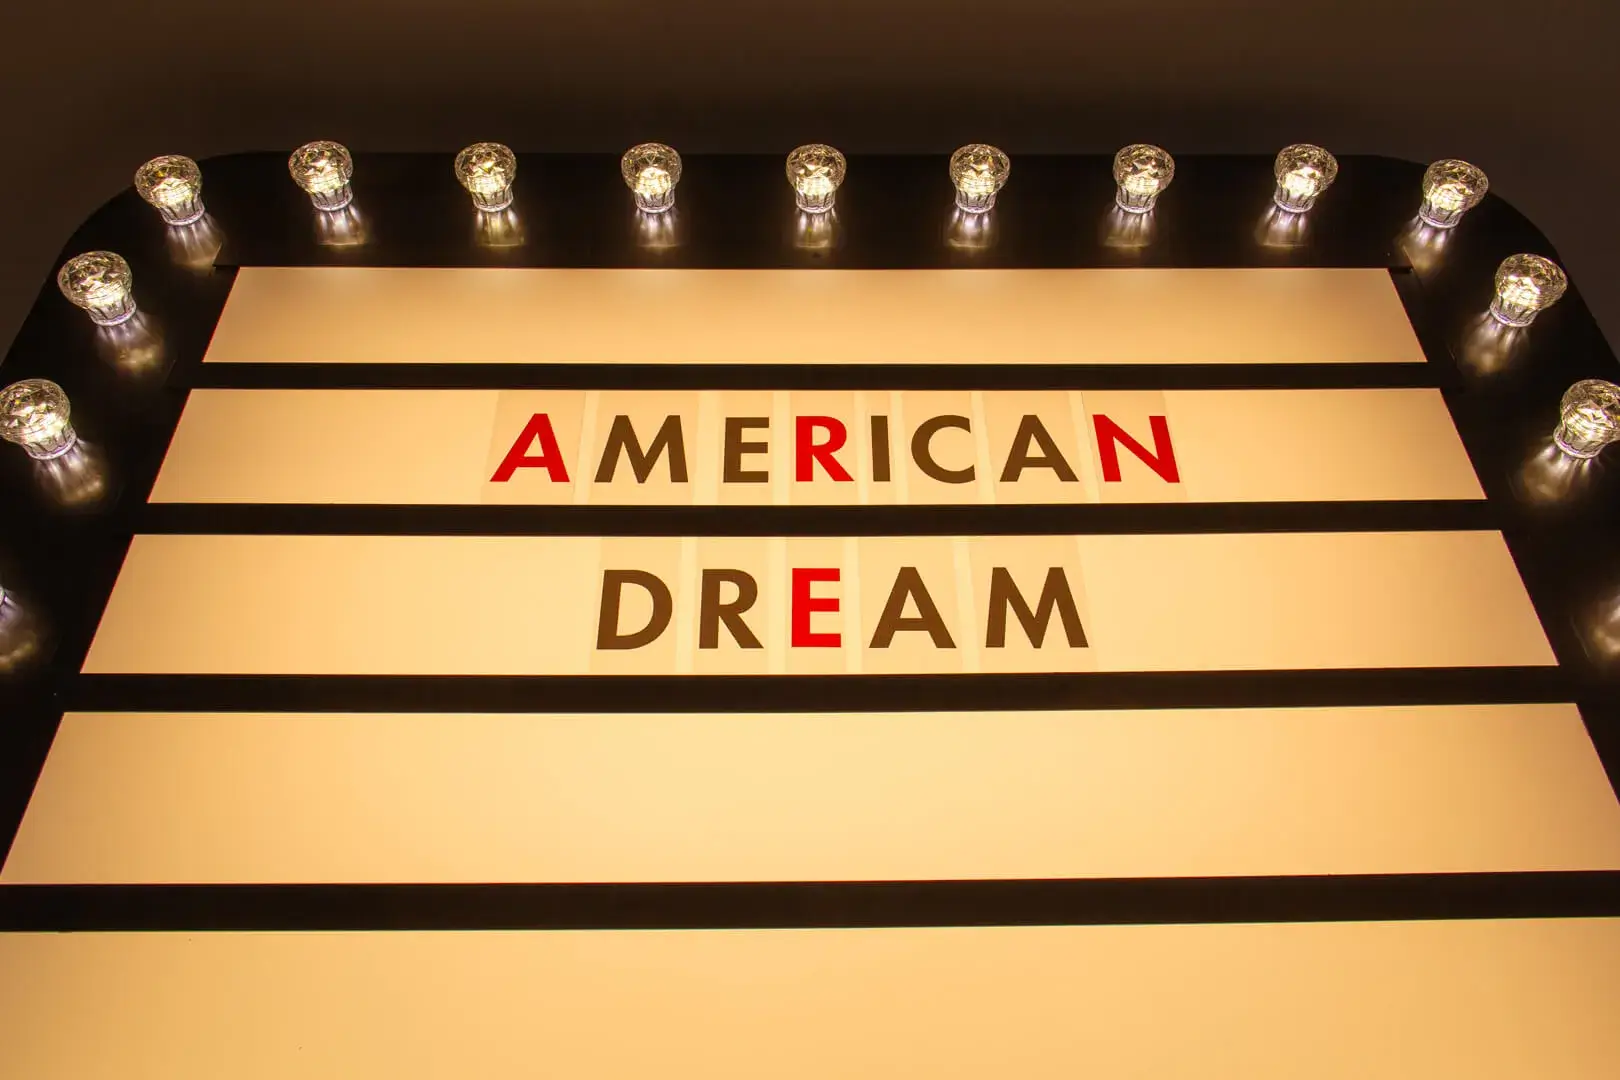 panneau d'affichage avec inscription "American Dream" (rêve américain)